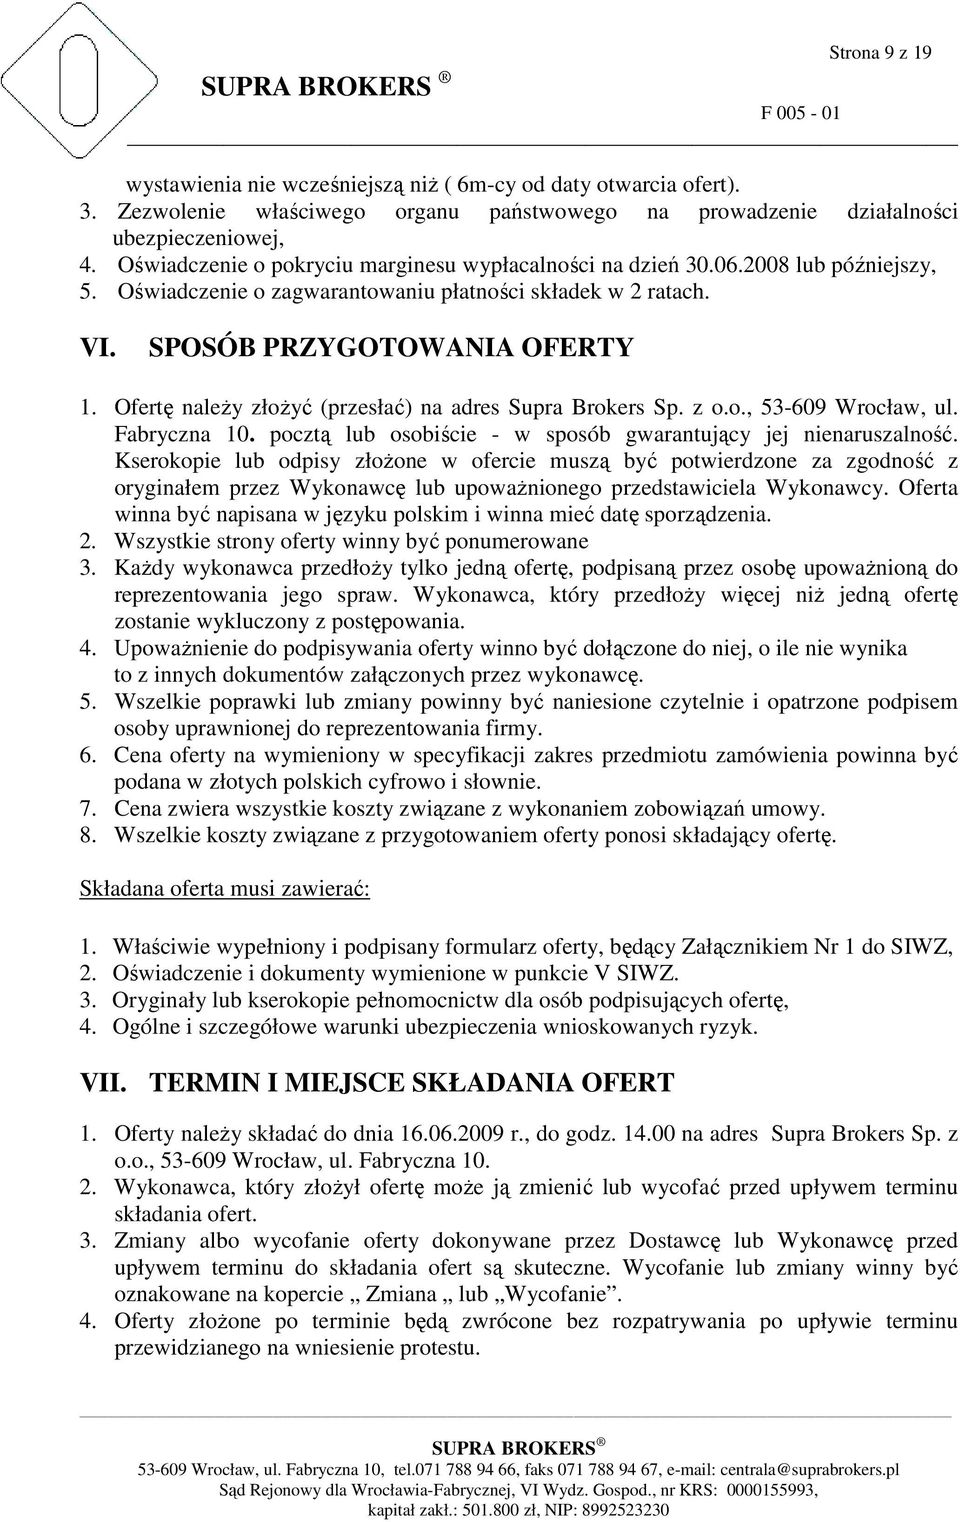 Ofertę naleŝy złoŝyć (przesłać) na adres Supra Brokers Sp. z o.o., 53-609 Wrocław, ul. Fabryczna 10. pocztą lub osobiście - w sposób gwarantujący jej nienaruszalność.